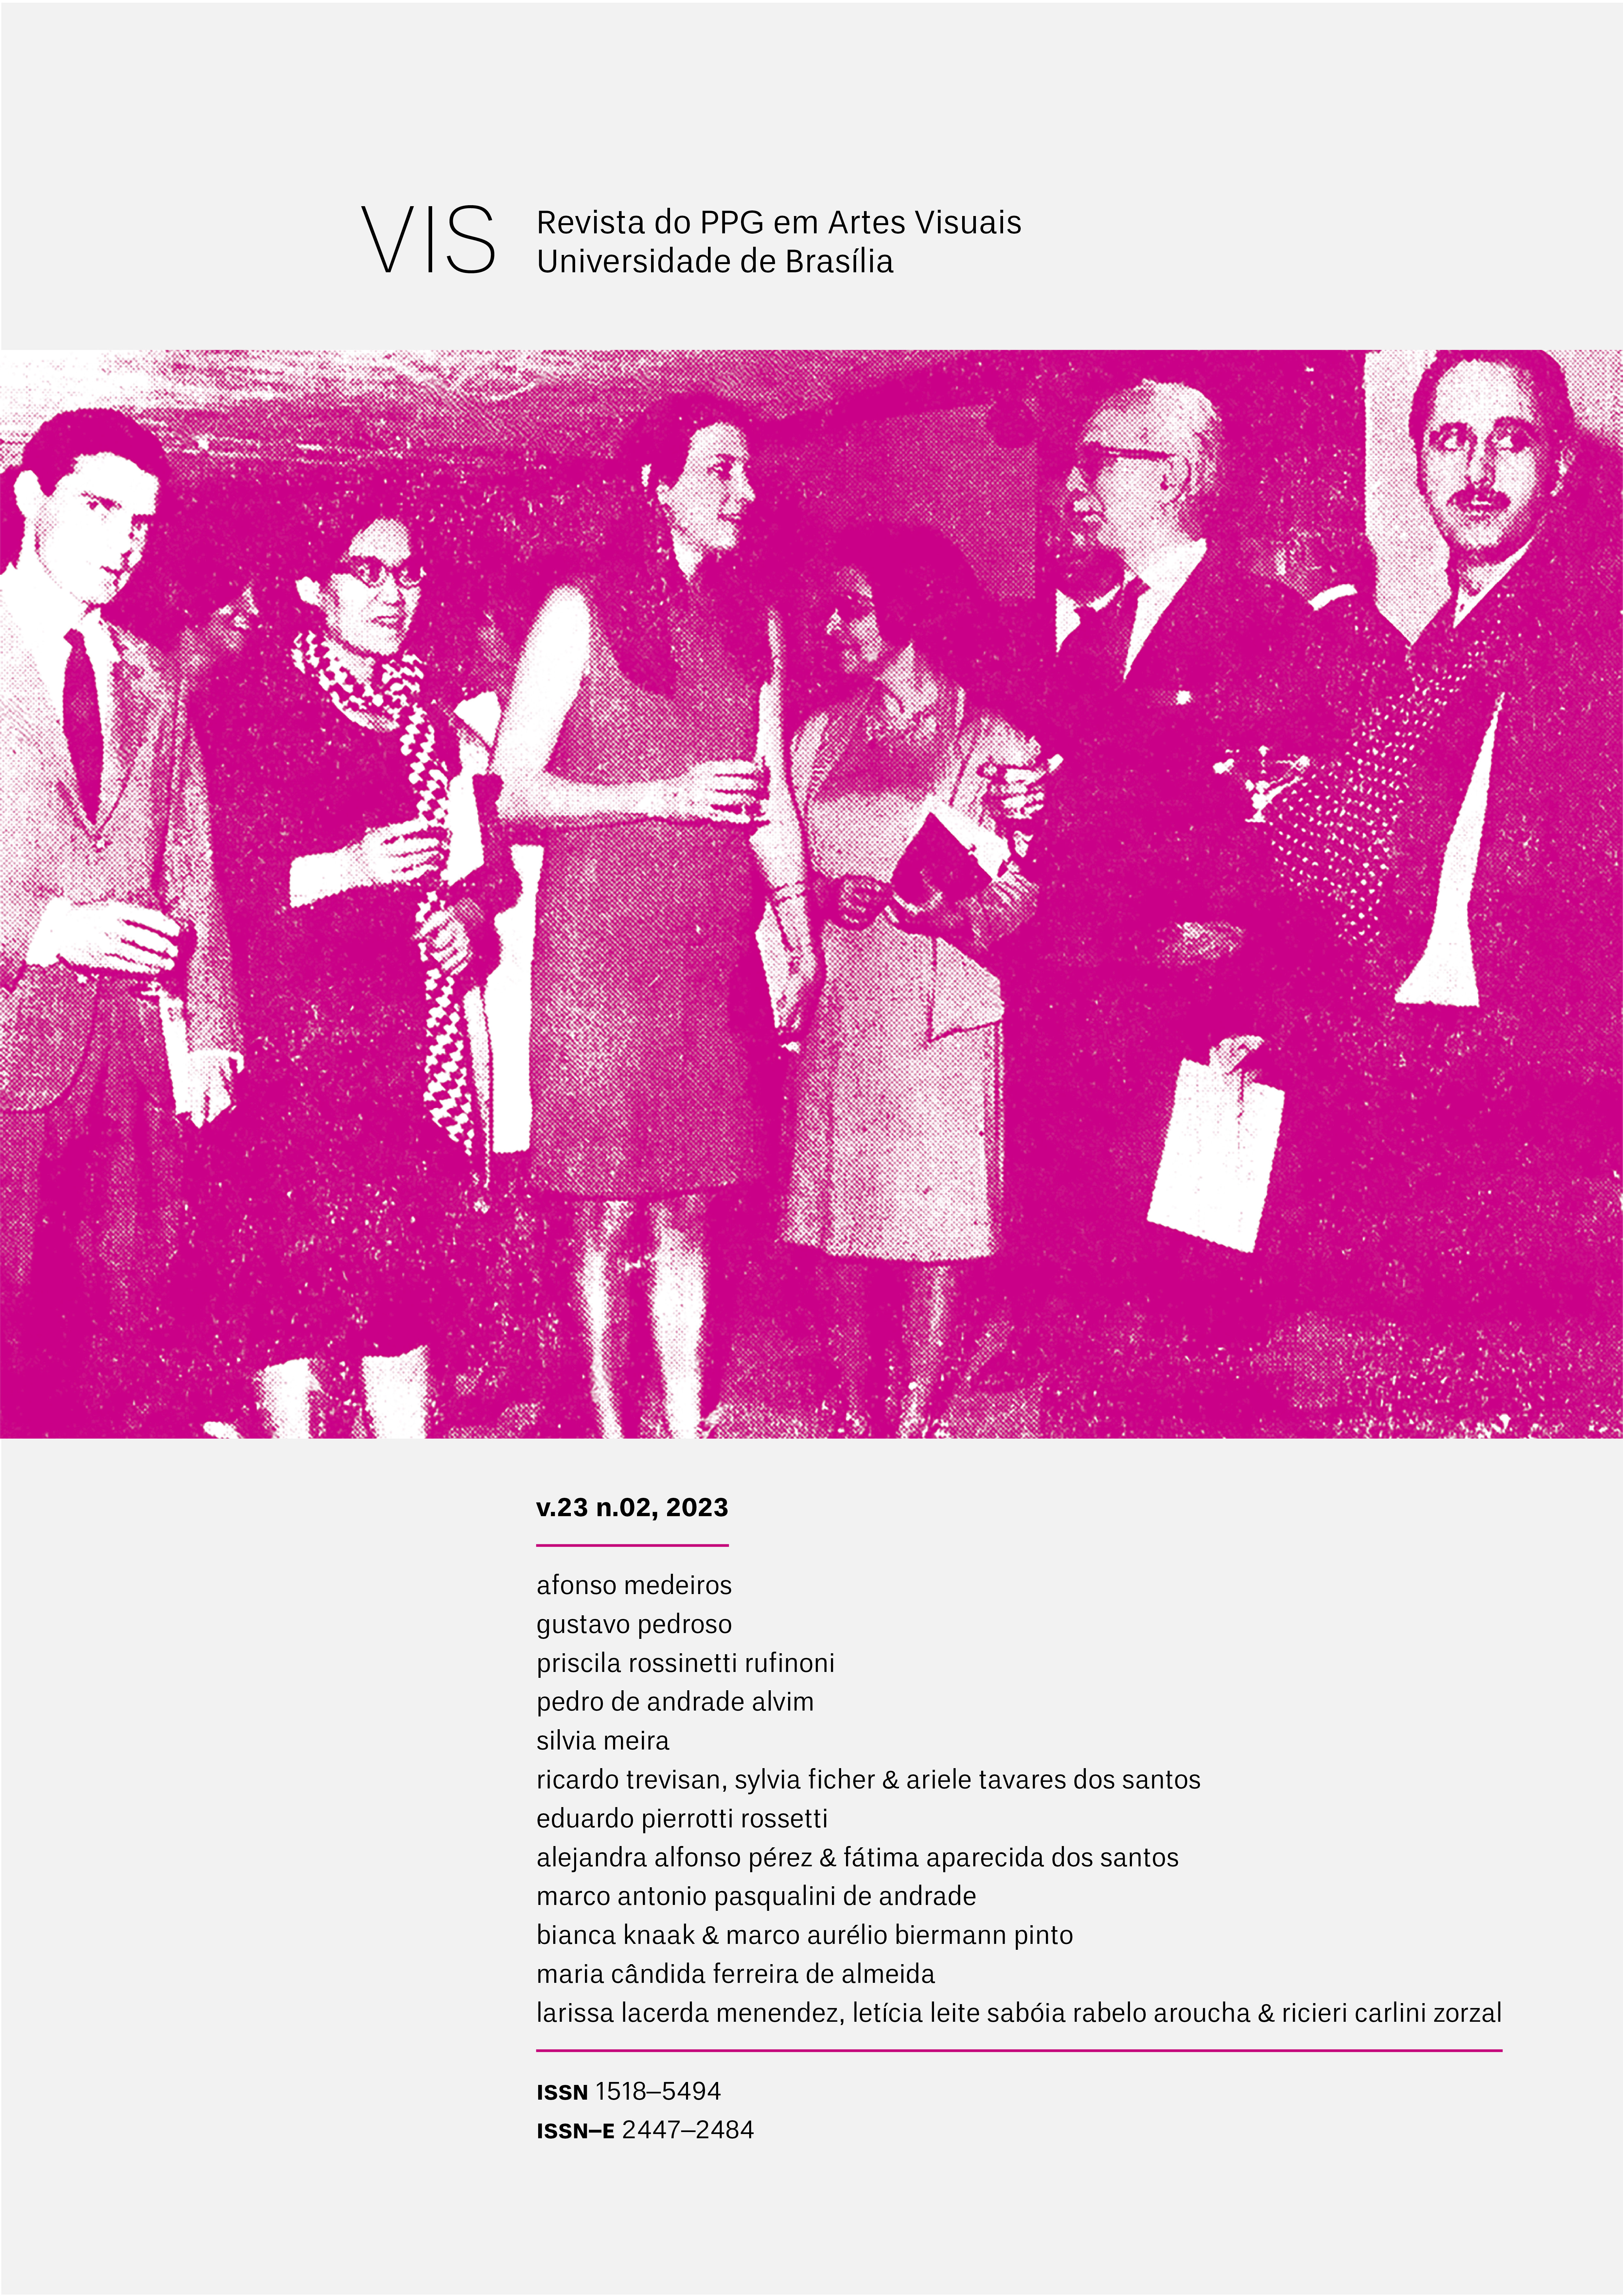 1. Abertura do III Salão de Arte Moderna do Distrito Federal, em 1966, com os premiados: Gastão Manuel Henrique, Tomie Othake (representando Vilma Pasqualini), Maria Bonomi, o prefeito Plinio Castanhede, e Farnese de Andrade.